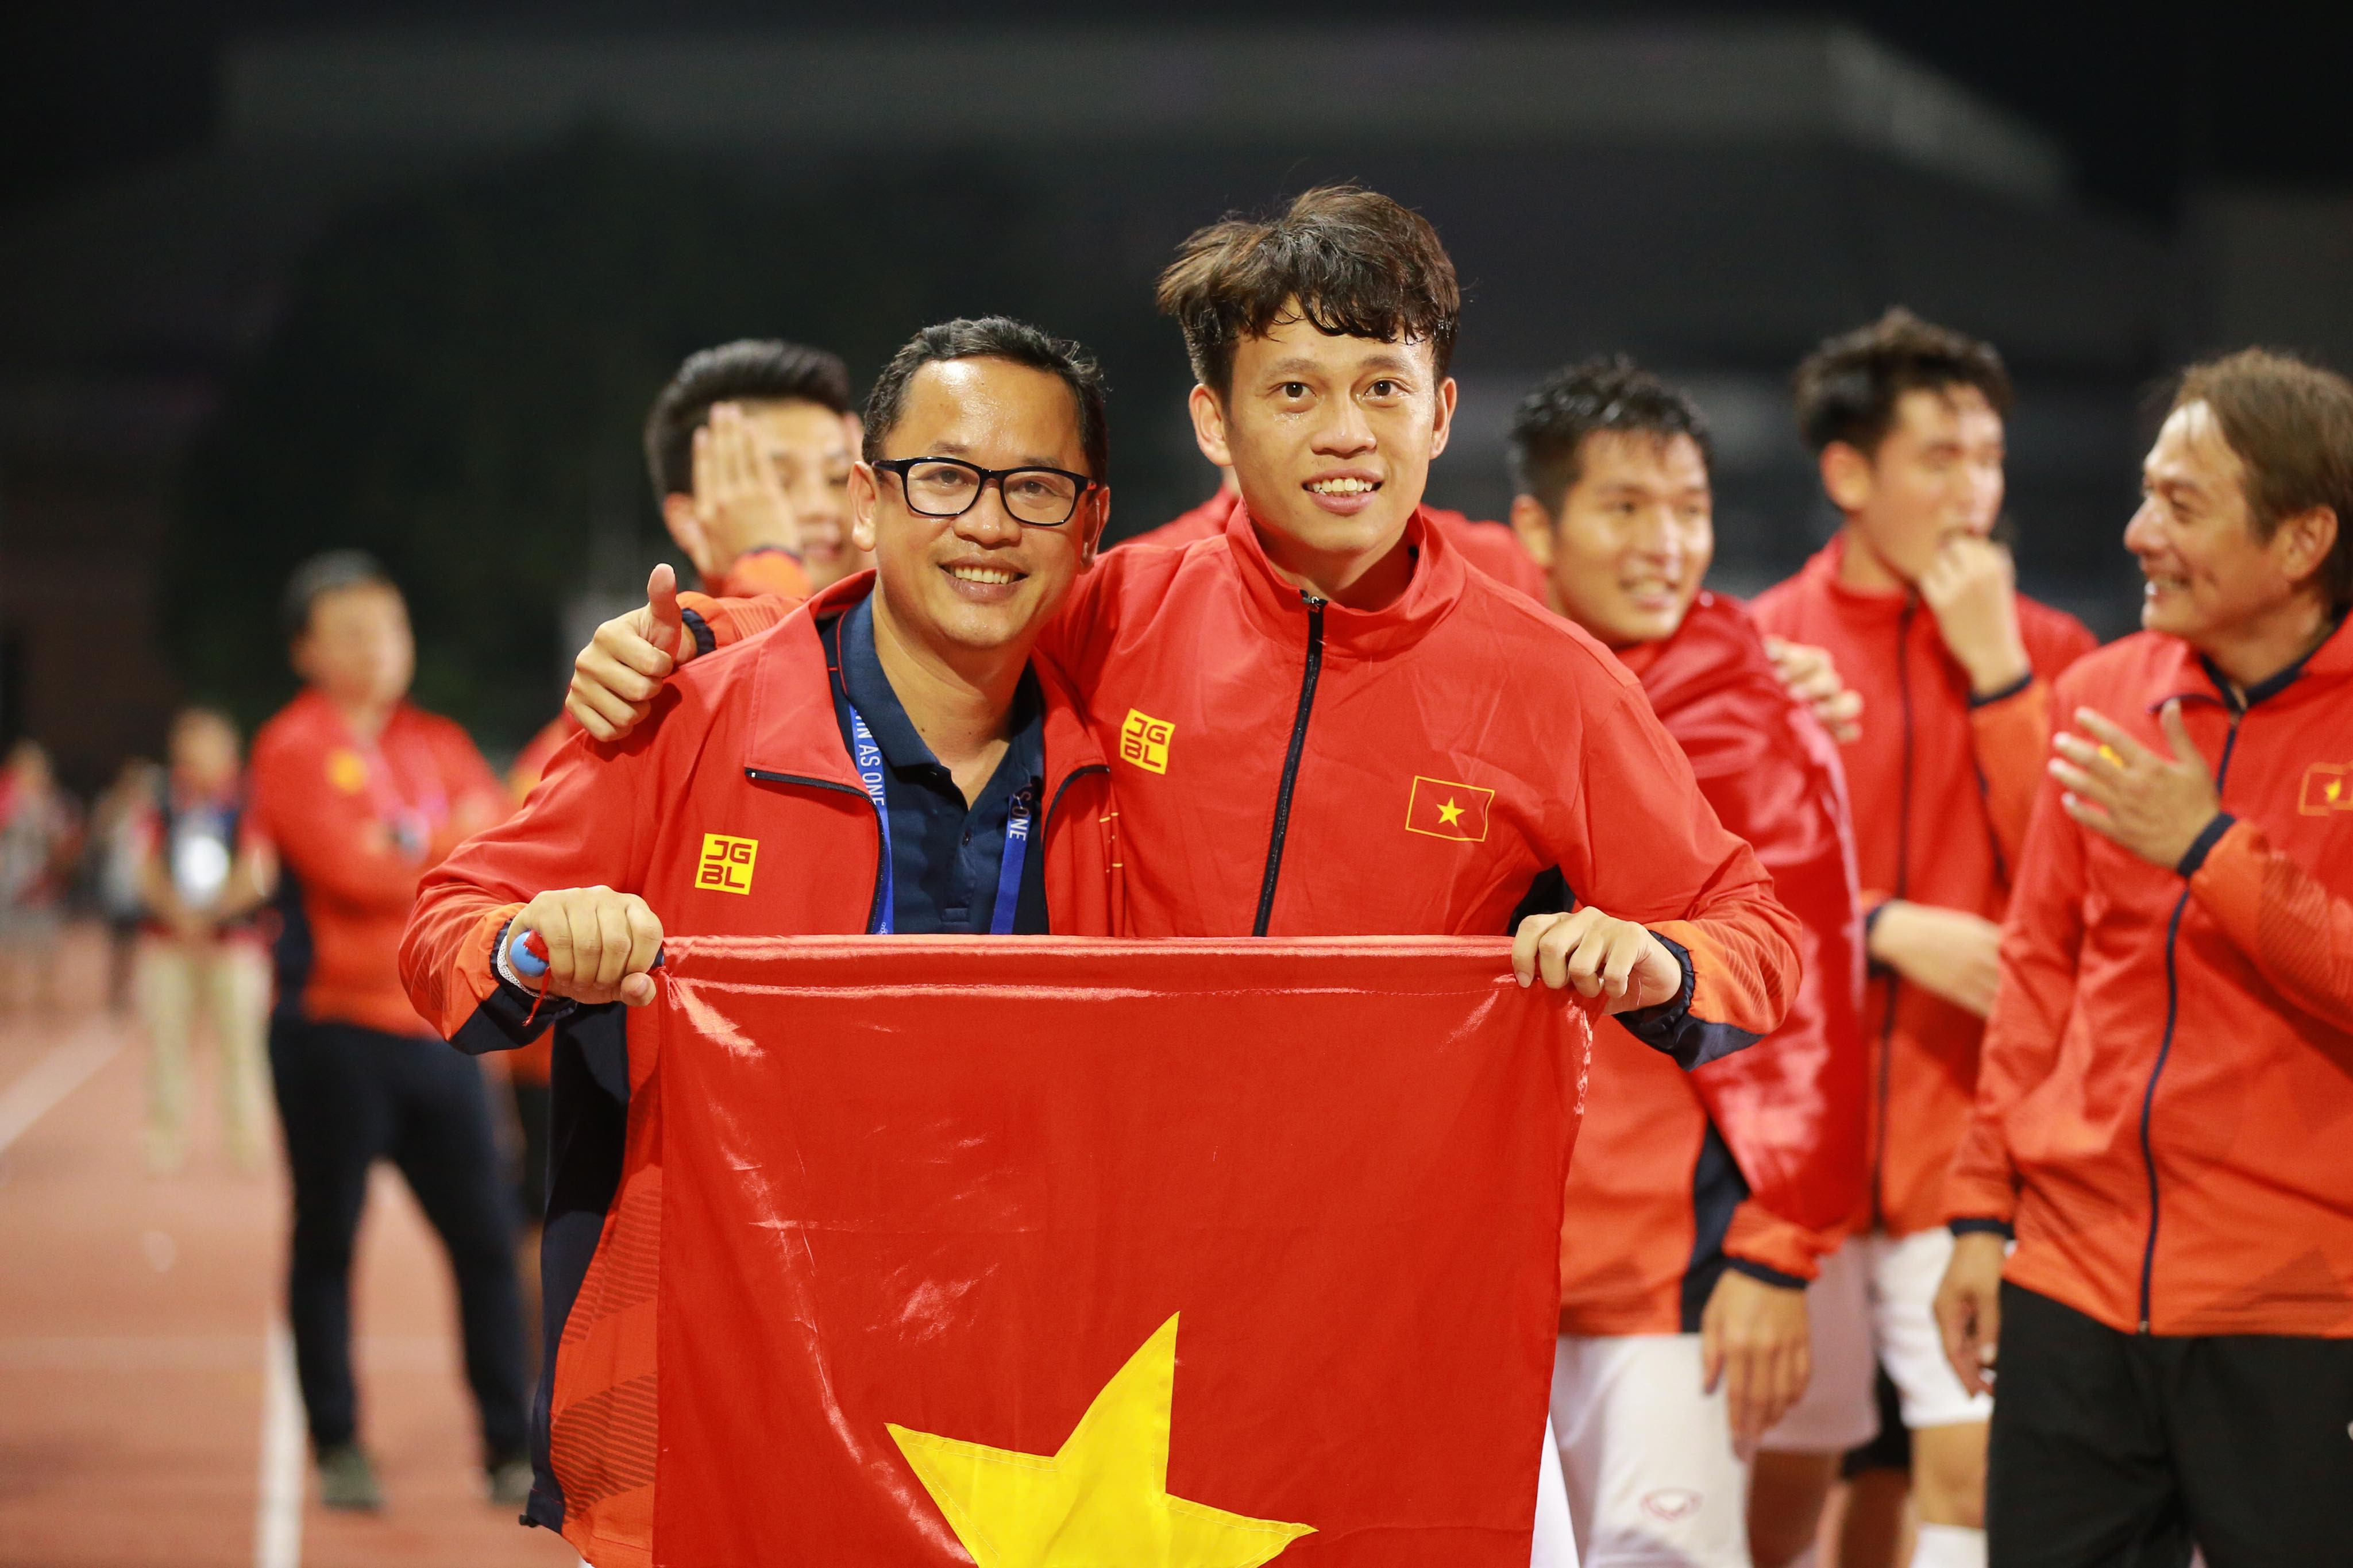 Nếu như Trọng Hoàng là cầu thủ xứ Nghệ duy nhất trong đội hình U22 Việt Nam thì trợ lý ngôn nữ Lê Huy Khoa thực sự là cánh tay phải của HLV Park Hang-seo kể từ kỳ tích tại Thường Châu năm 2018 đến chức vô địch vừa qua. Ảnh: Hải Hoàng